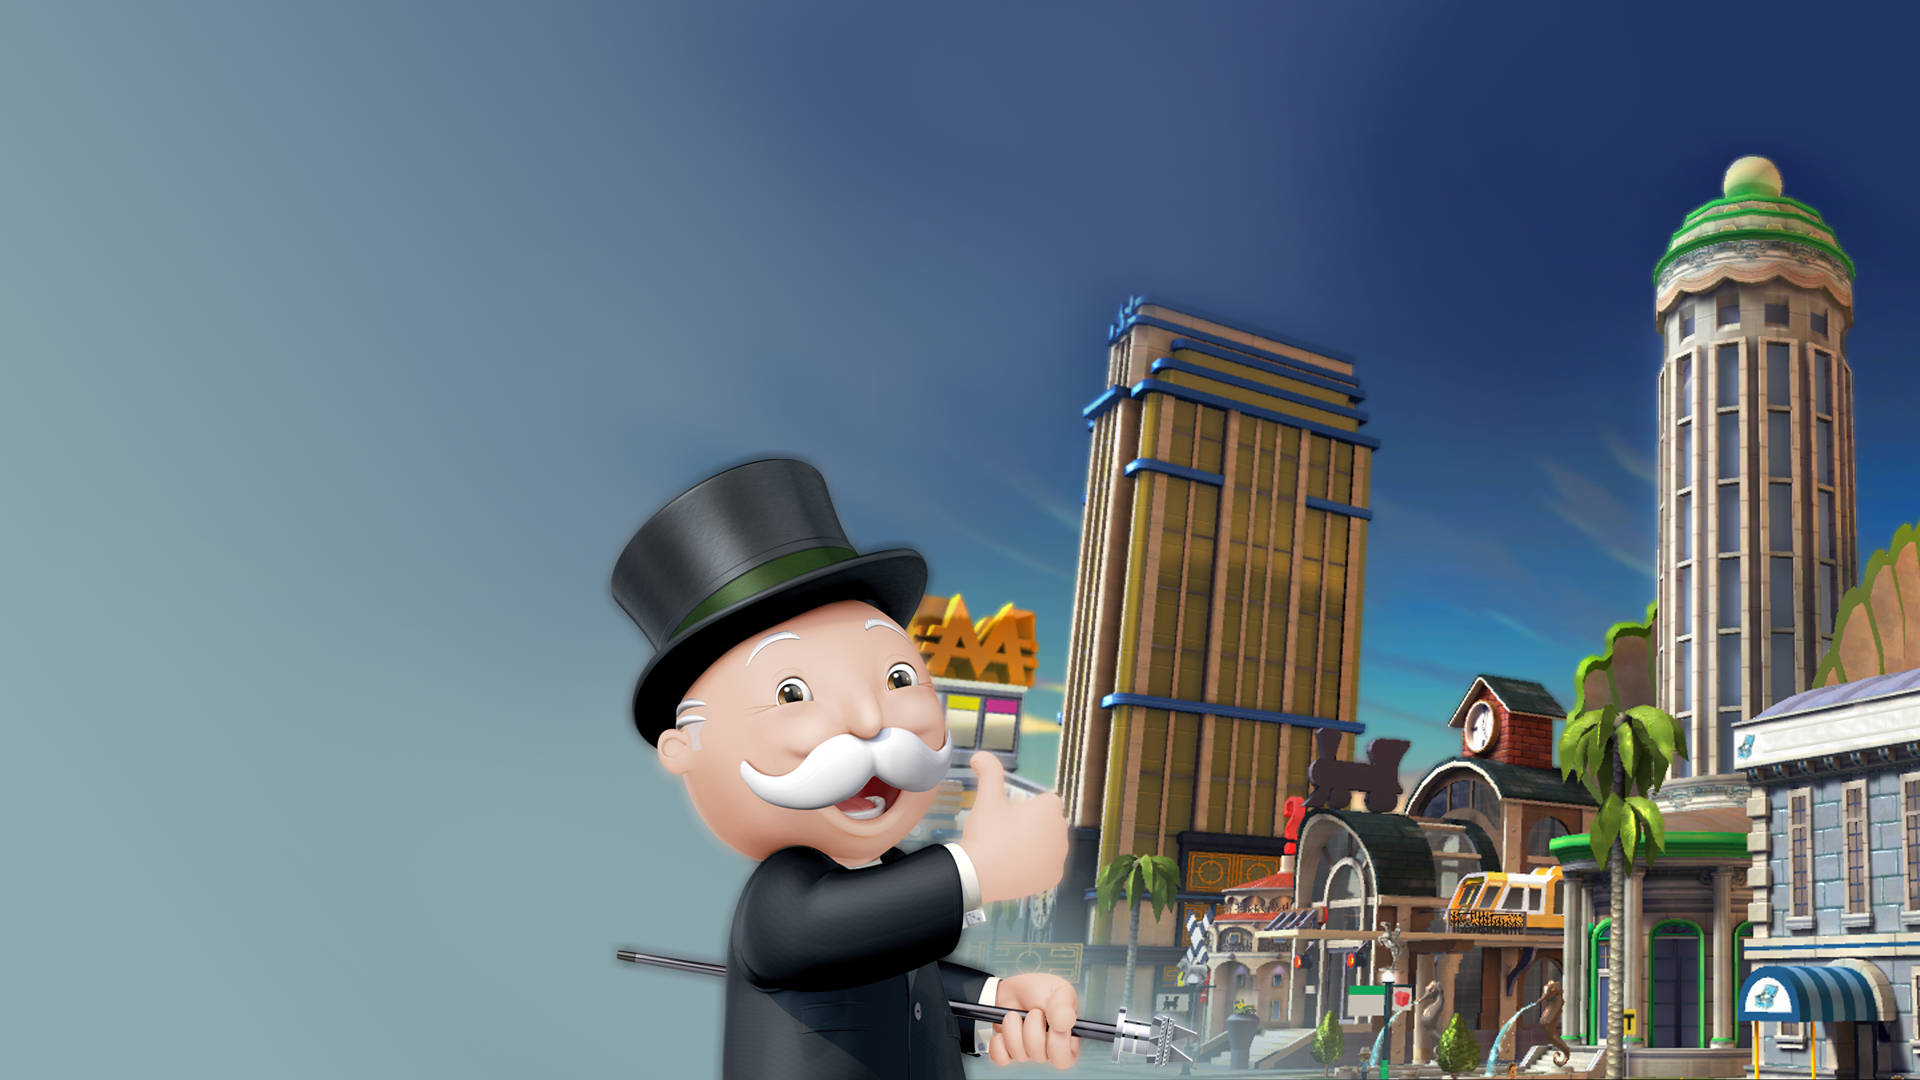 3D Monopoly Man Wallpaper